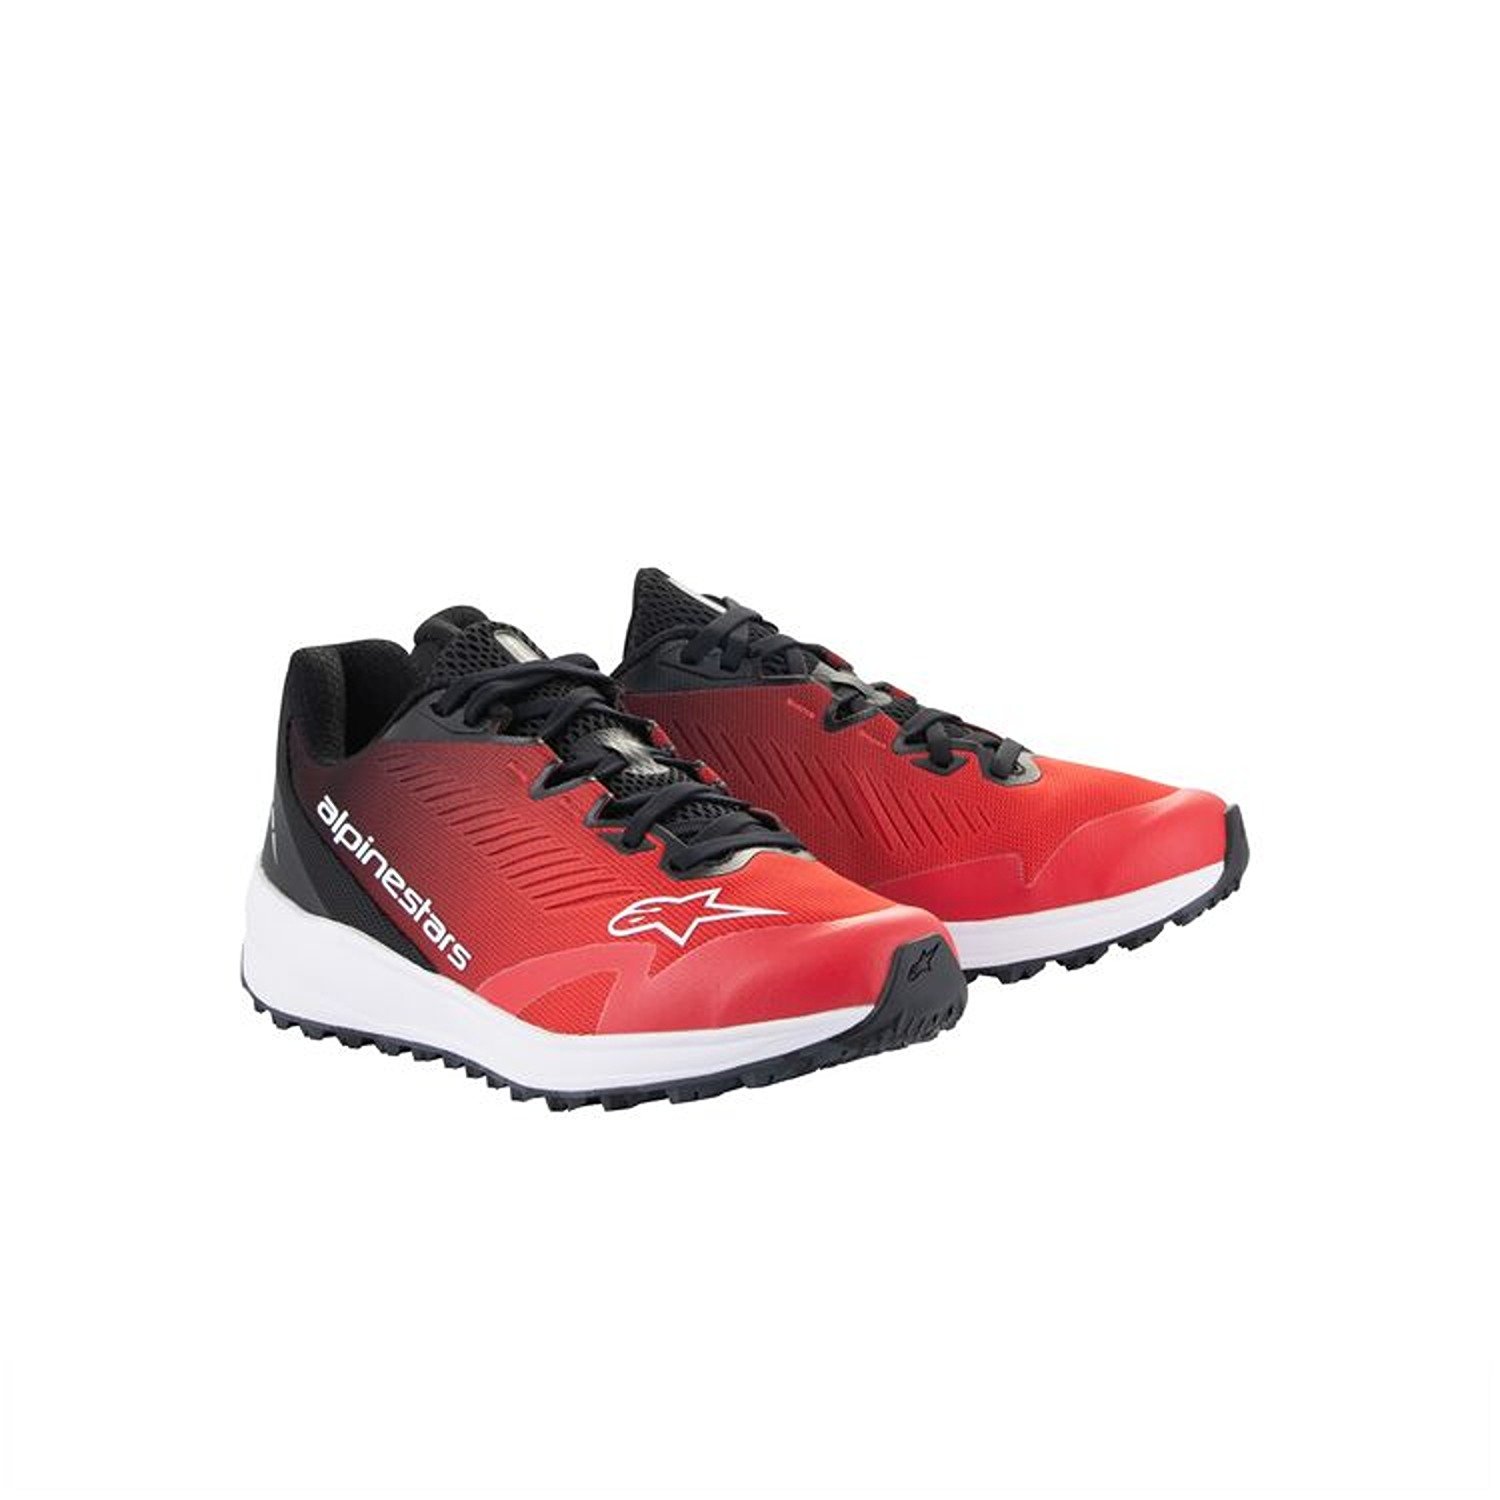 Image of Alpinestars Meta Road V2 Shoes Red Black White Größe US 7